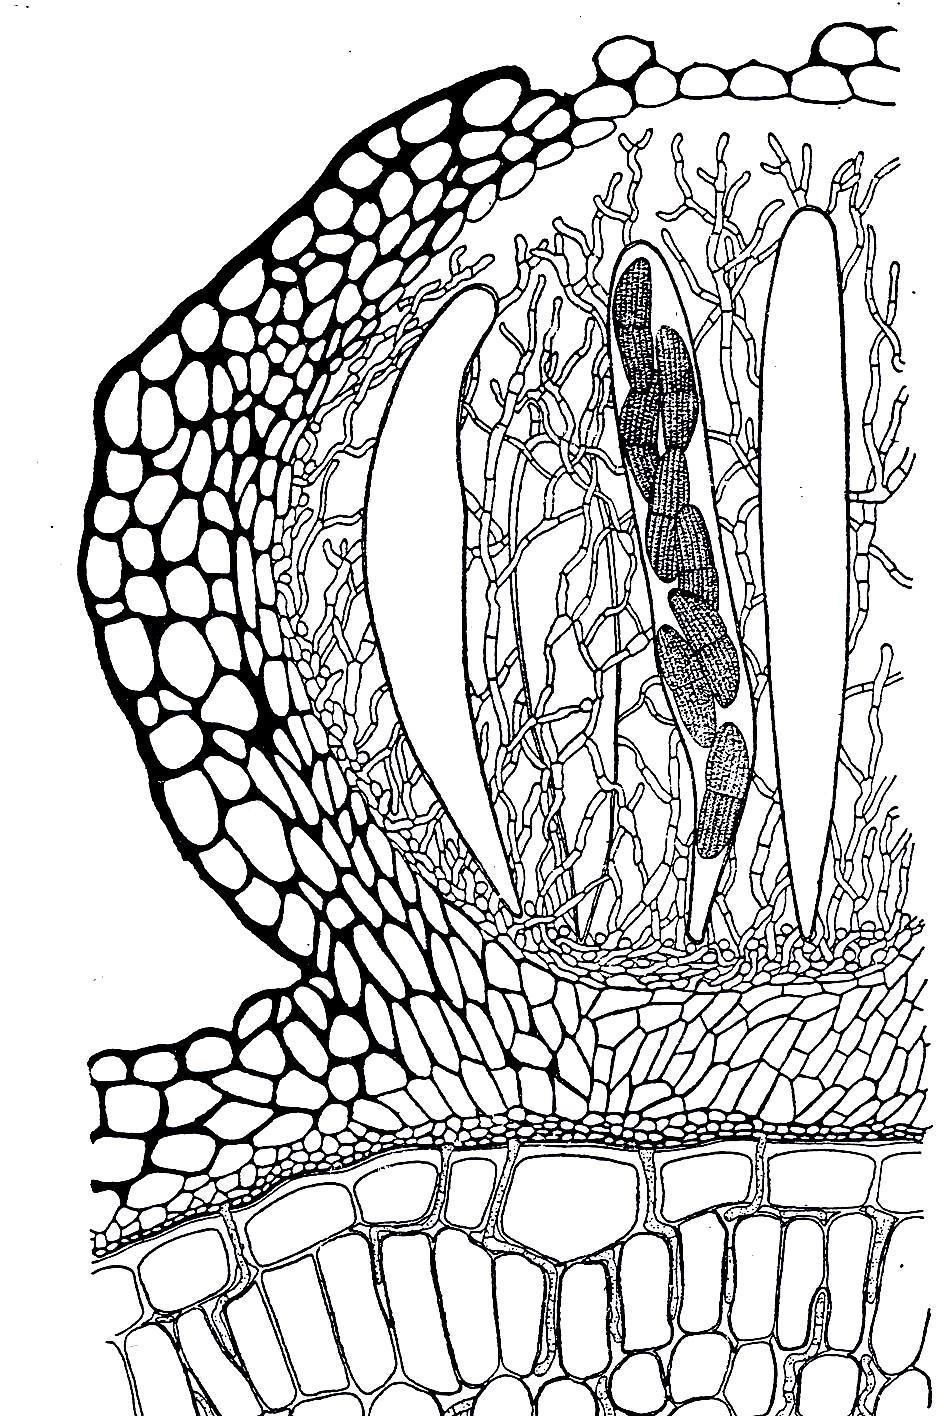 perithecioidní askostroma